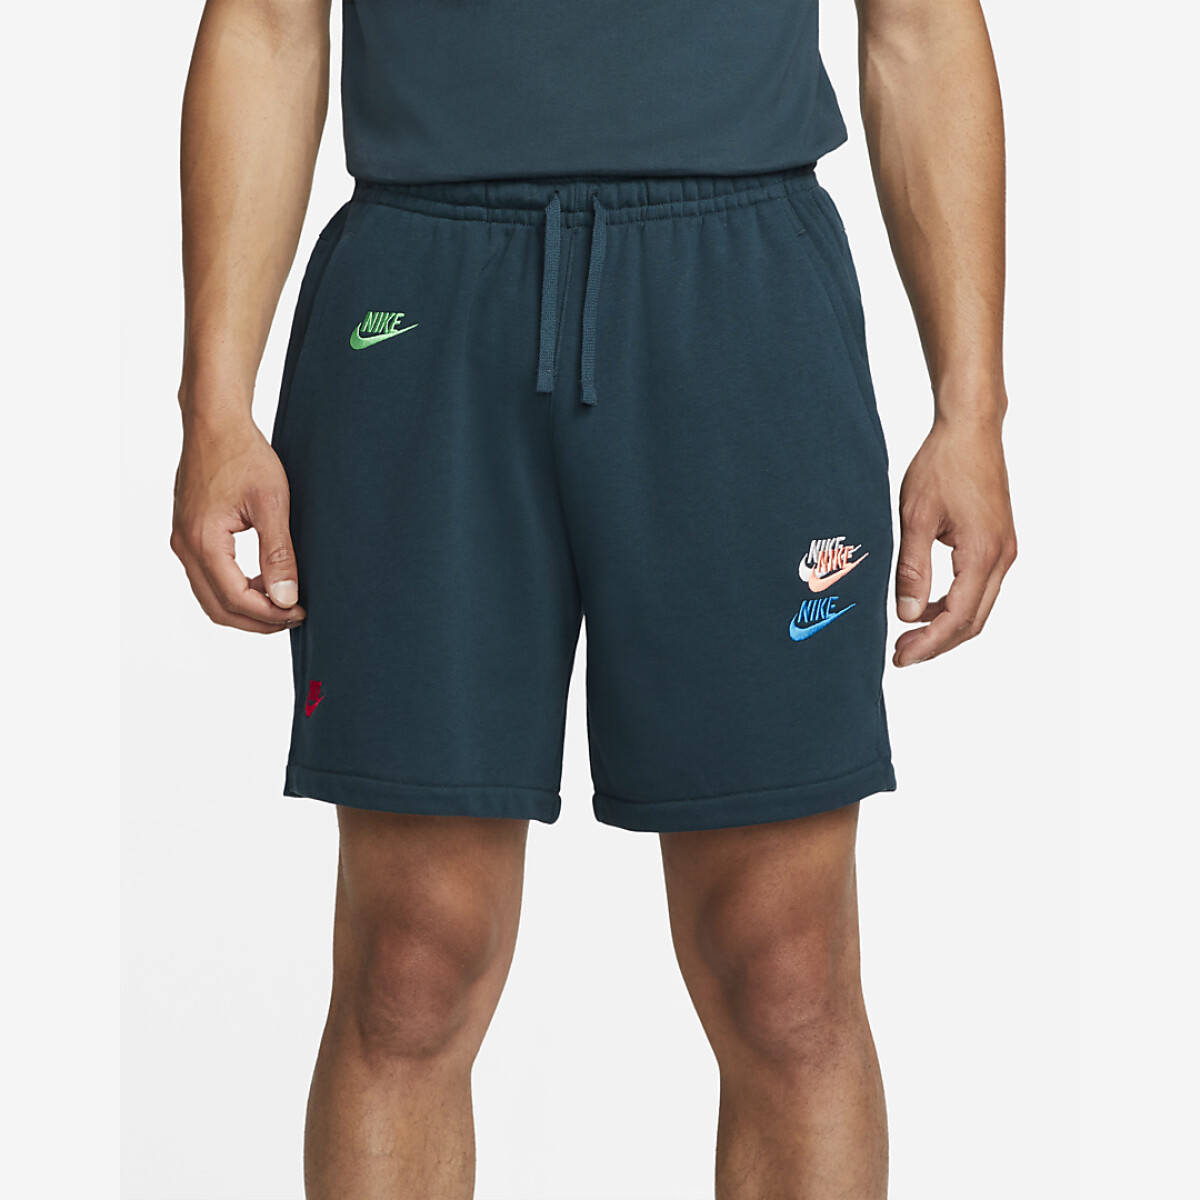 Short Nike Moda Hombre FTA APLA - Color Único 